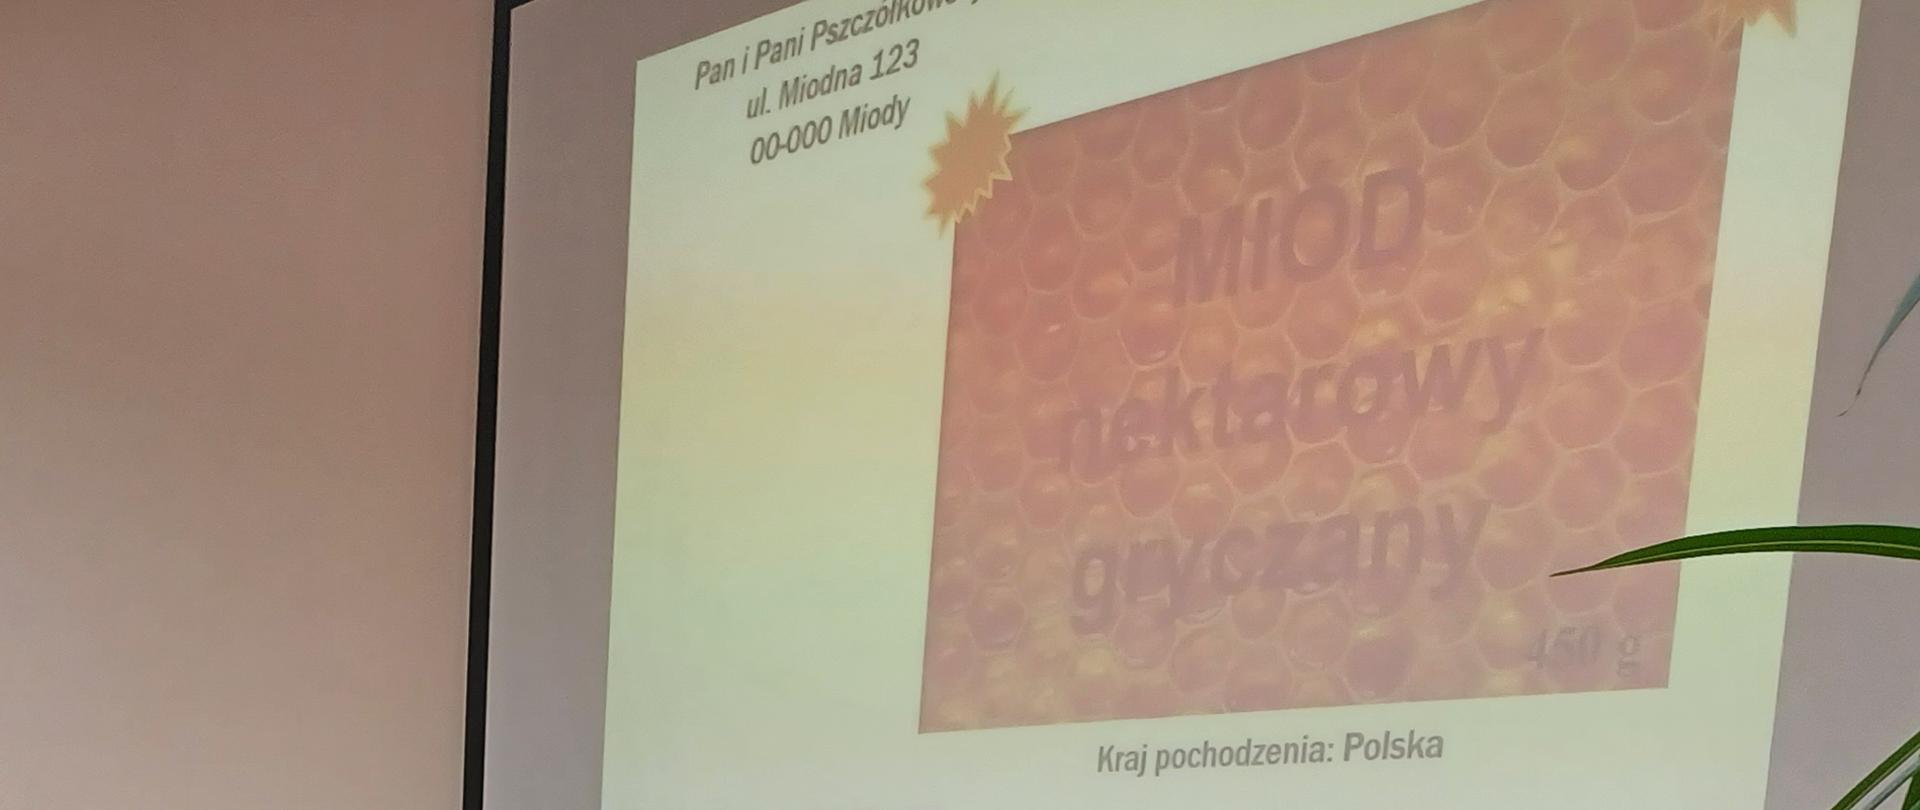 Foto 1. To już kolejne spotkanie WIJHARS w Olsztynie z przedstawicielami branży pszczelarskiej